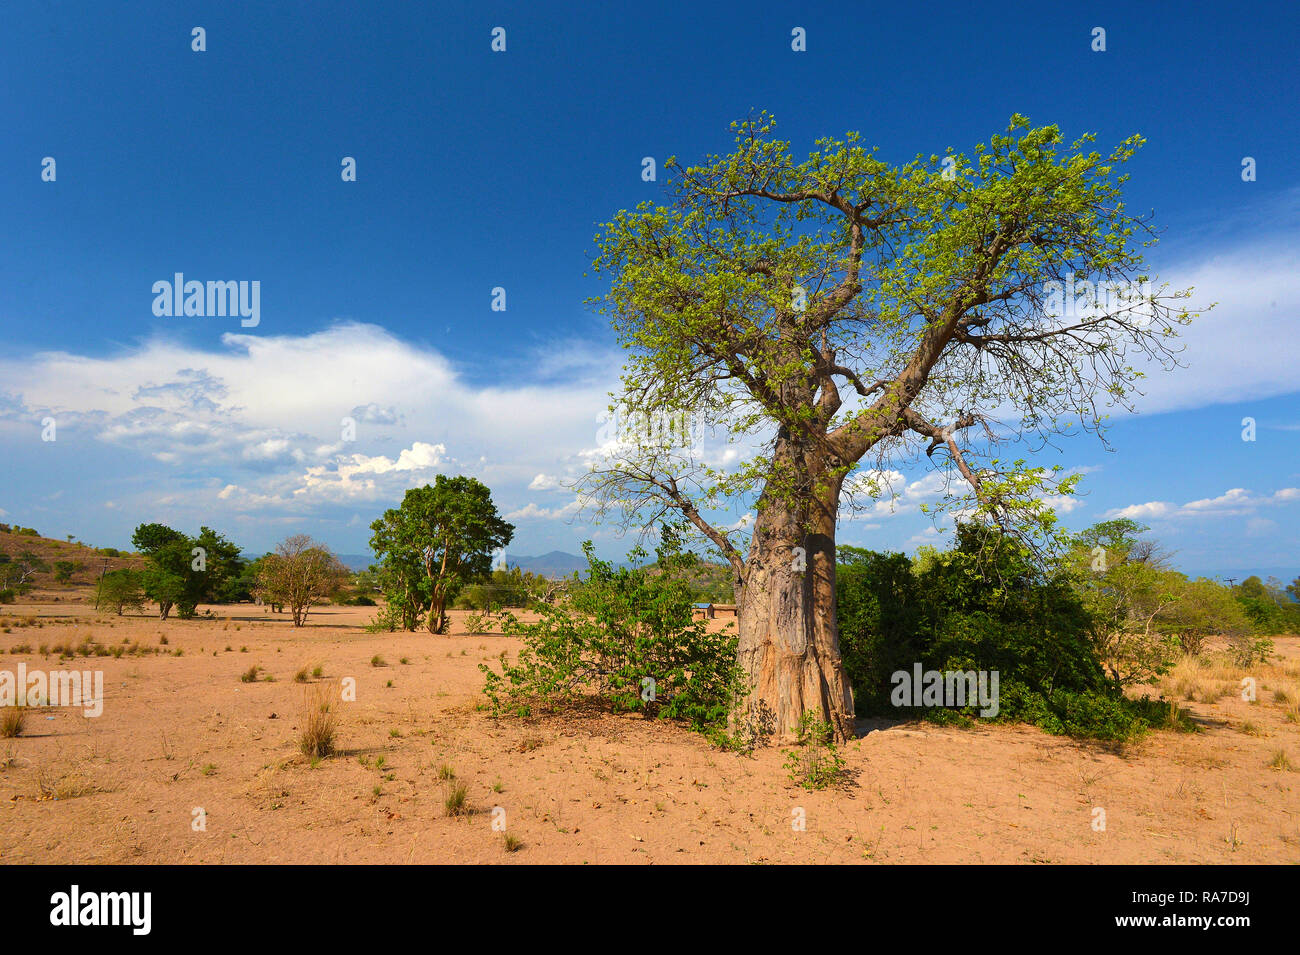 (Baobab Adansonia digitata) auch Affenbrotbaum oder Afrikanischer Affenbrotbaum genannt, Malawi | Baobab (Adansonia digitata), Malawi, Africa Foto Stock